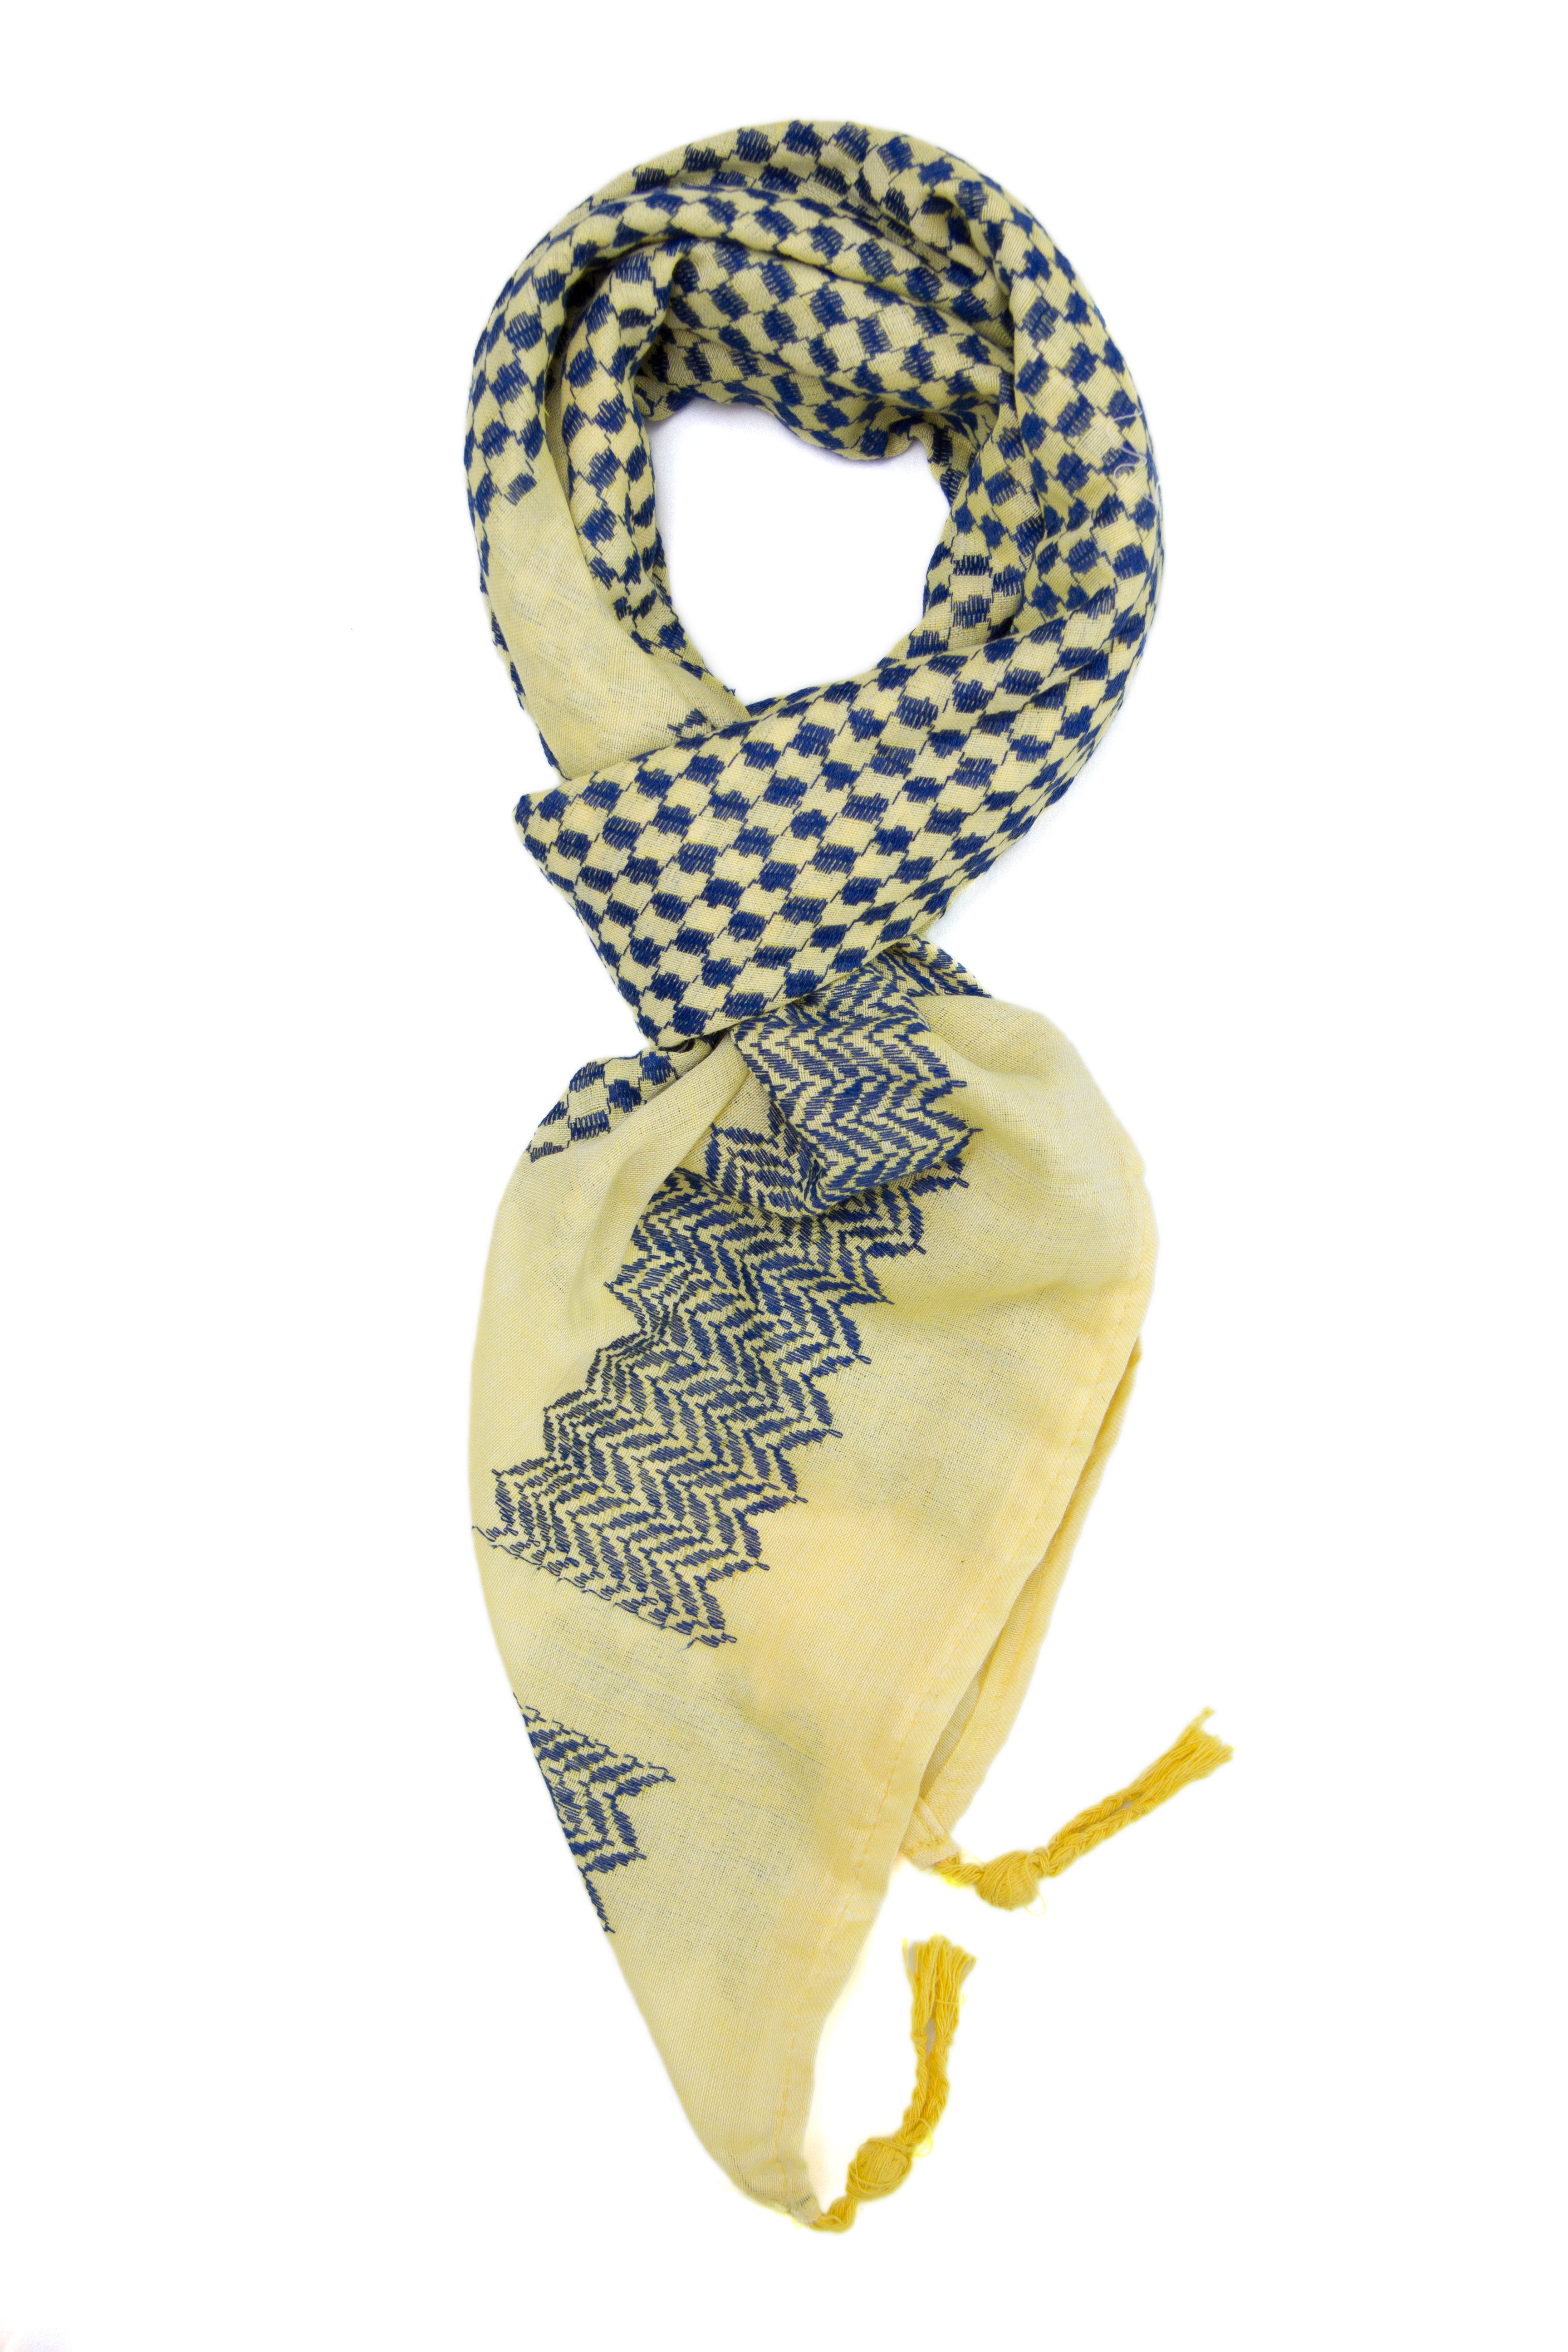 Hirbawi Original Mar Elias fashion scarf